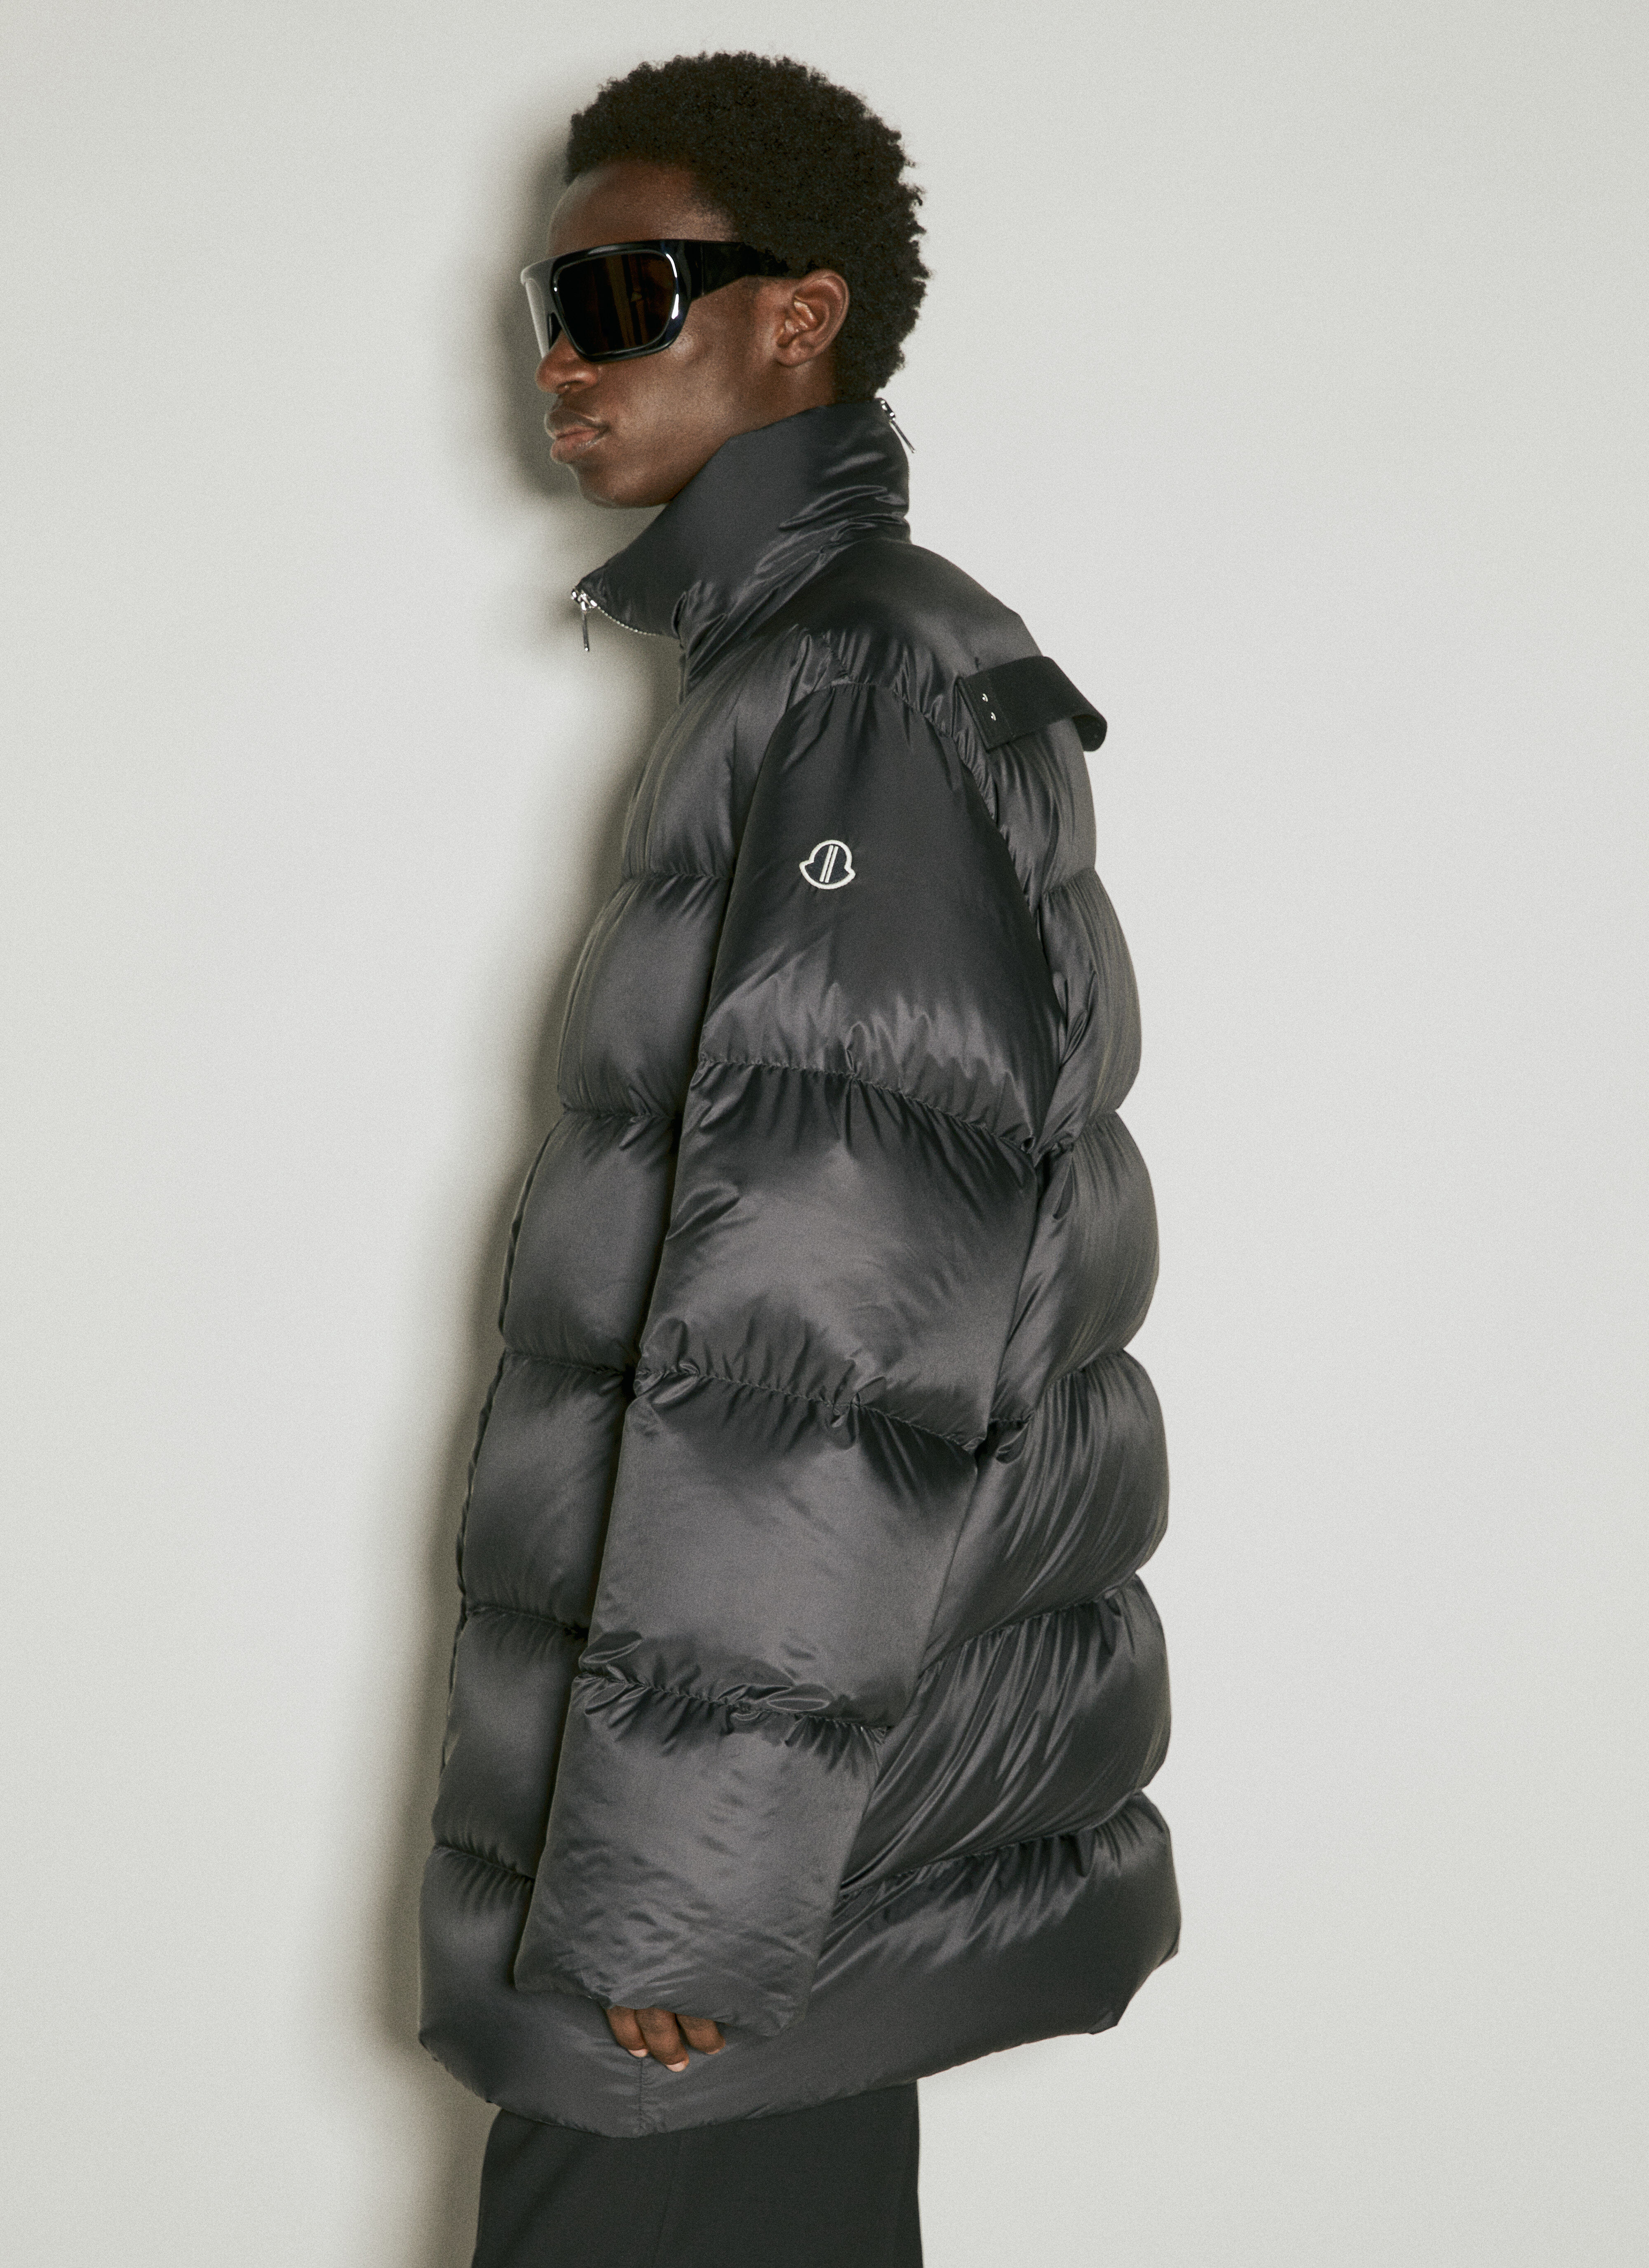 Moncler x Roc Nation designed by Jay-Z Cyclopic 长款羽绒服 黑色 mrn0156002